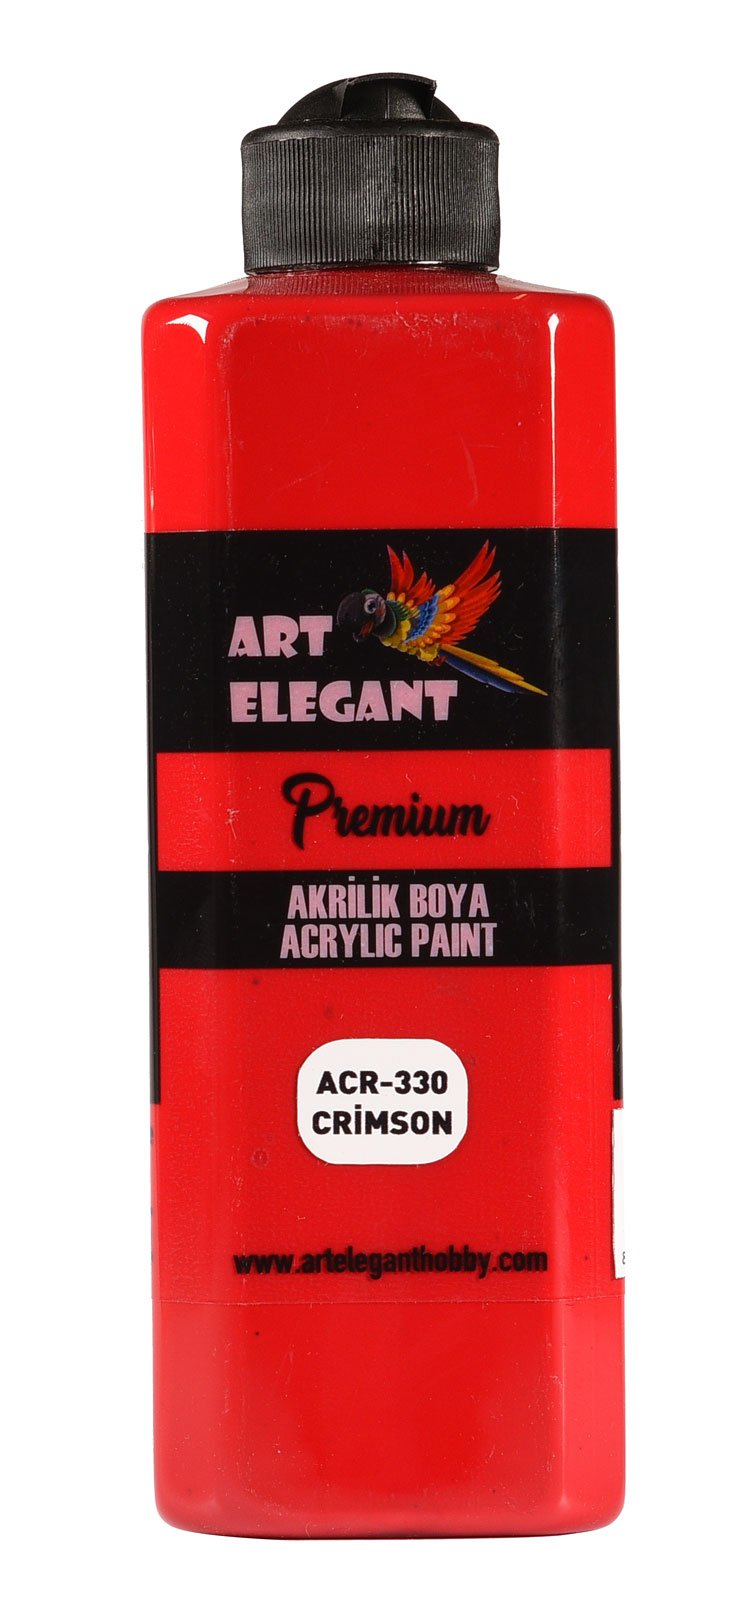 Art Elegant Akrilik Boya 400ml Acr-330 Crimson